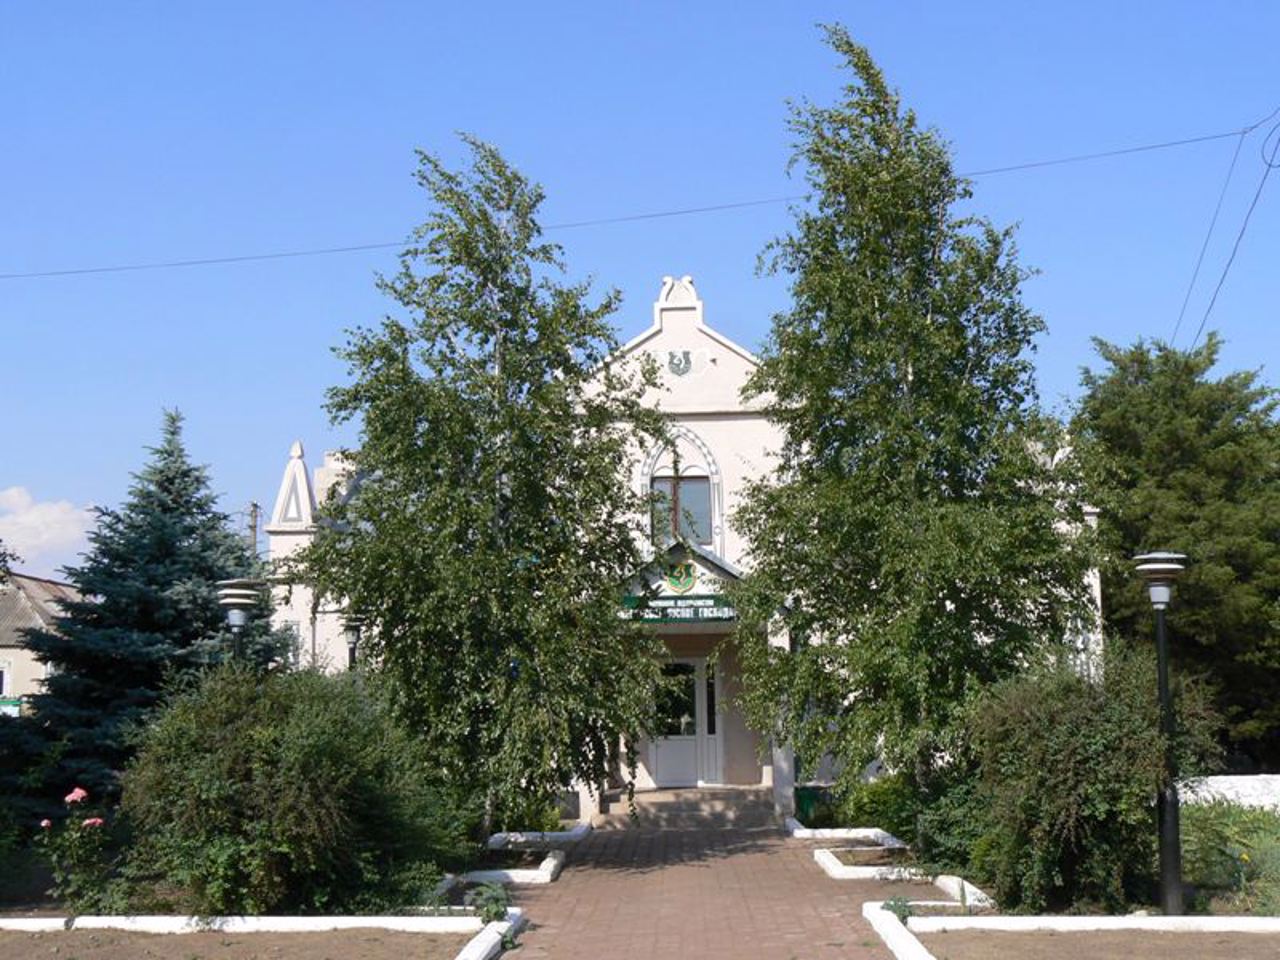 Nicholas I's Residence, Voznesensk